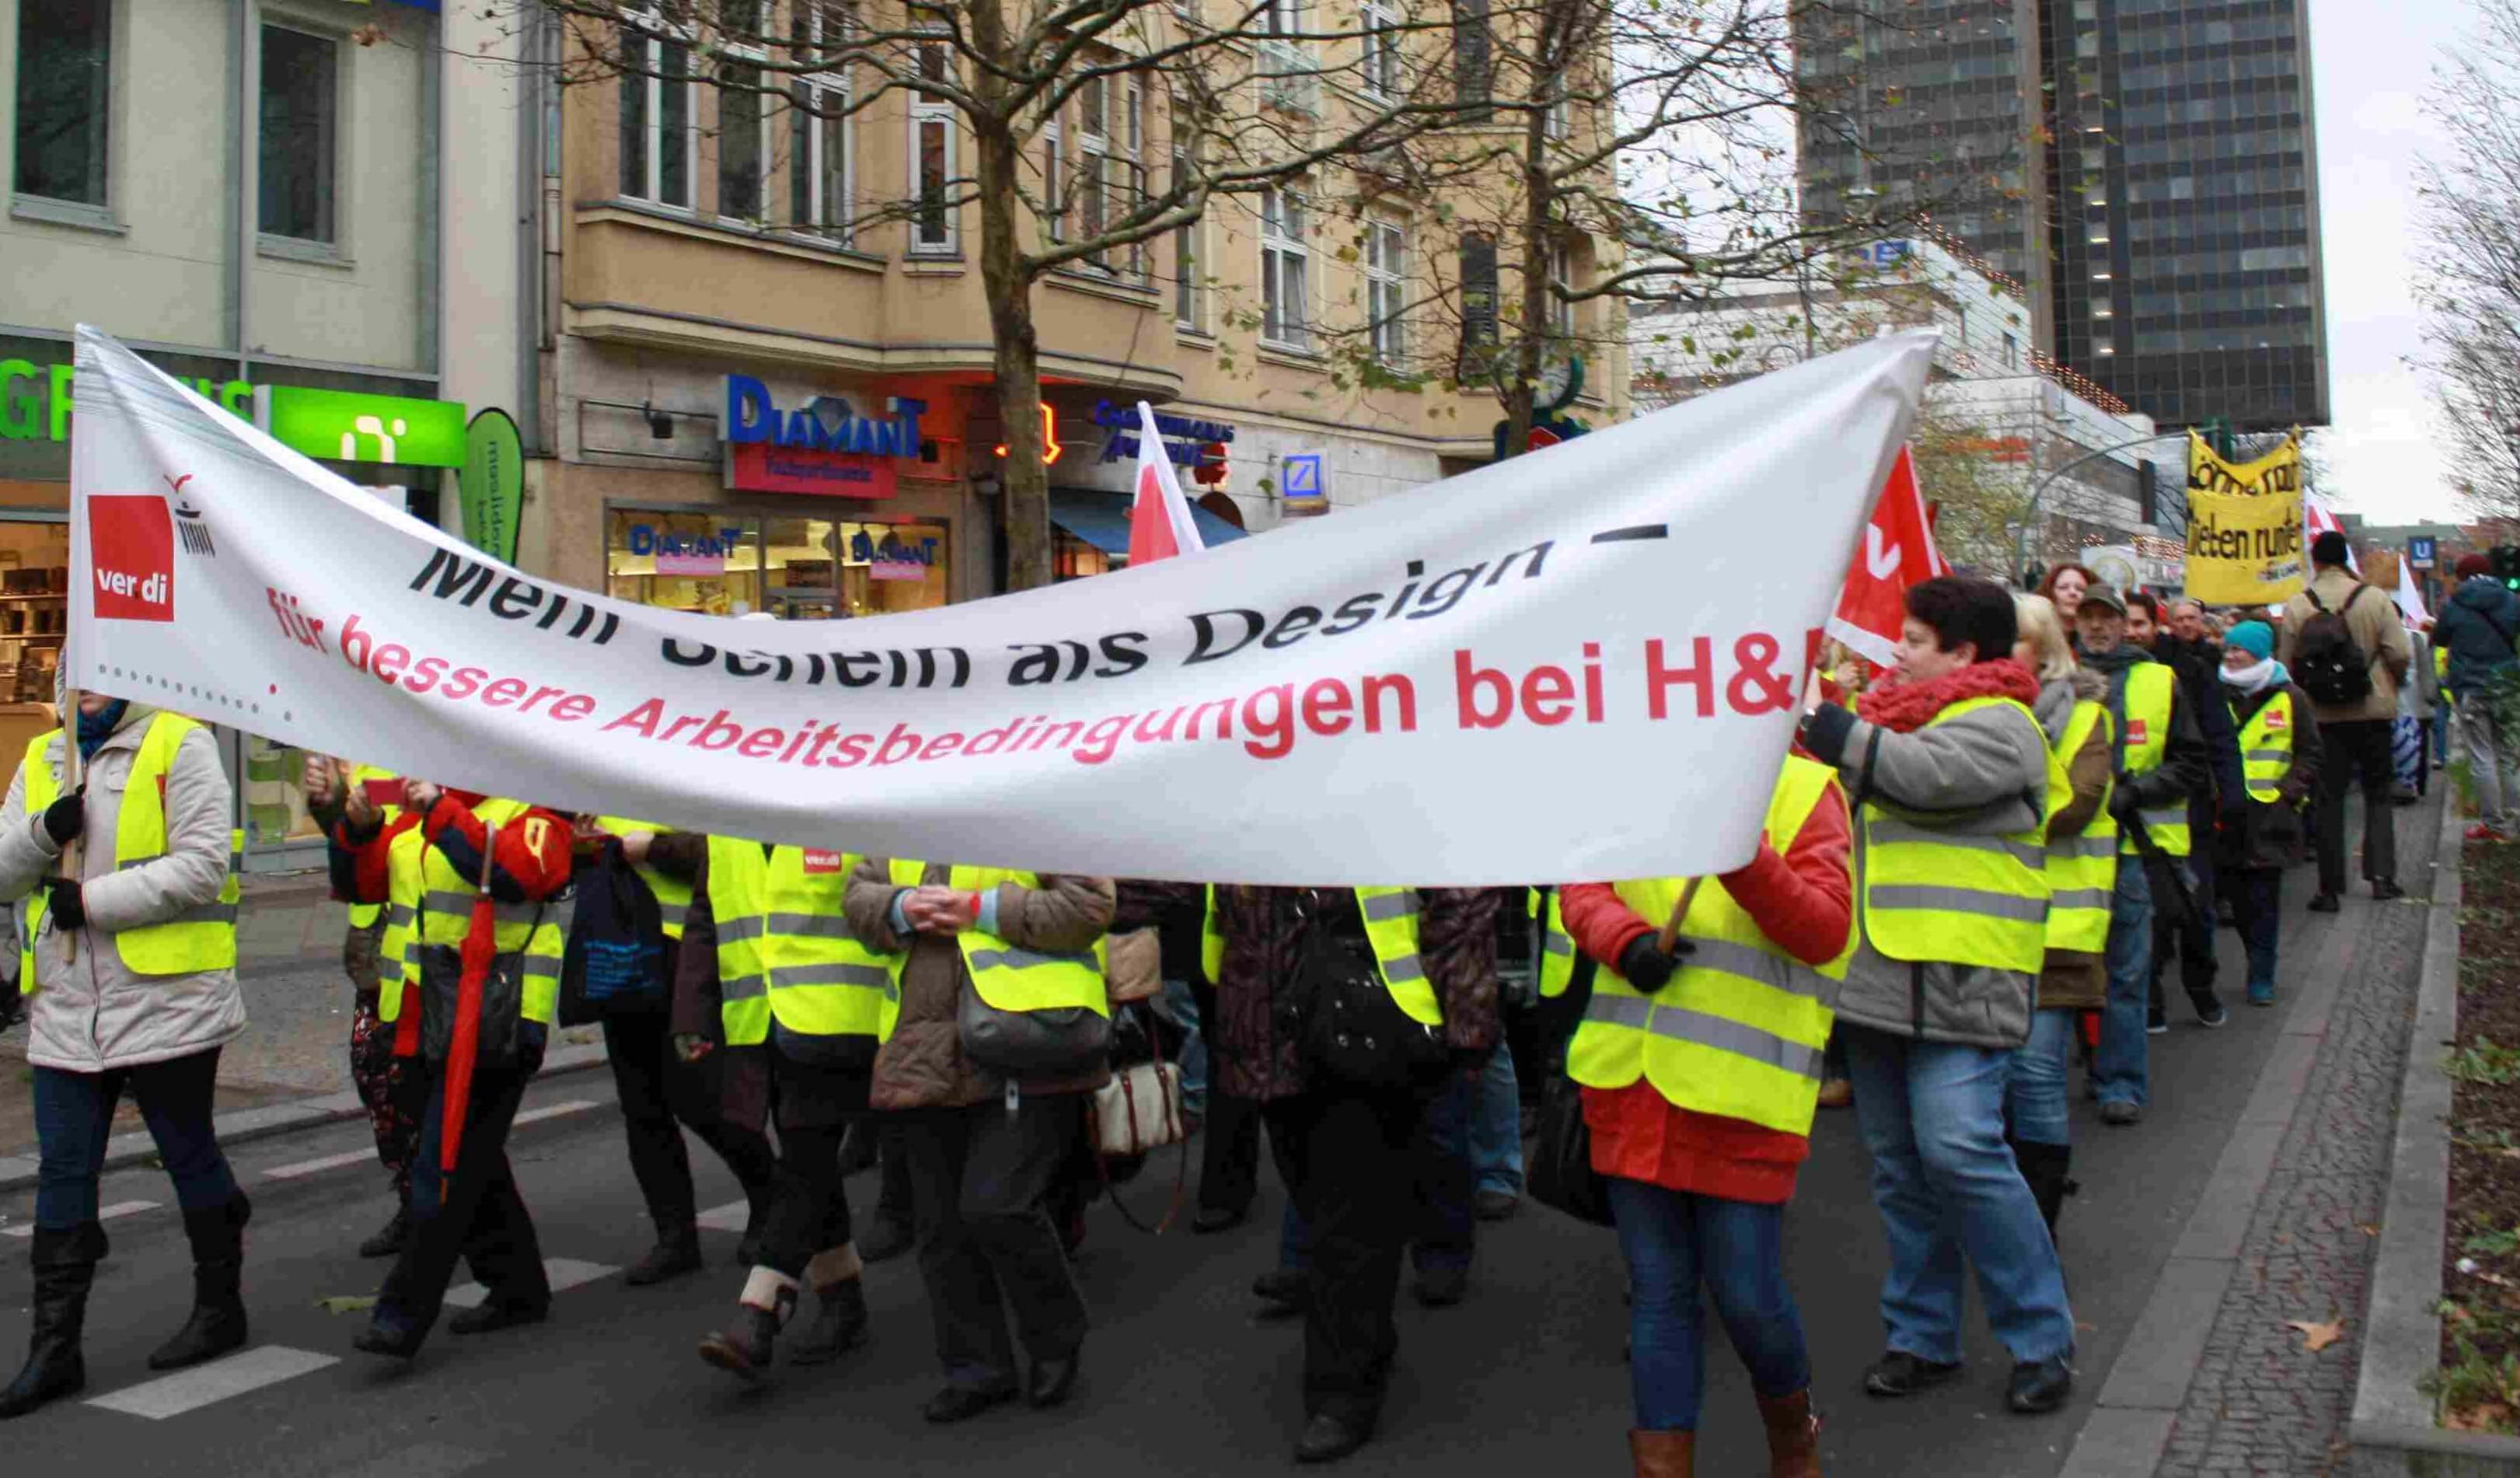 verdi legte Steglitzer Schloßstraße lahm: Einzelhandelsmitarbeiter fordern gerechte Bezahlung